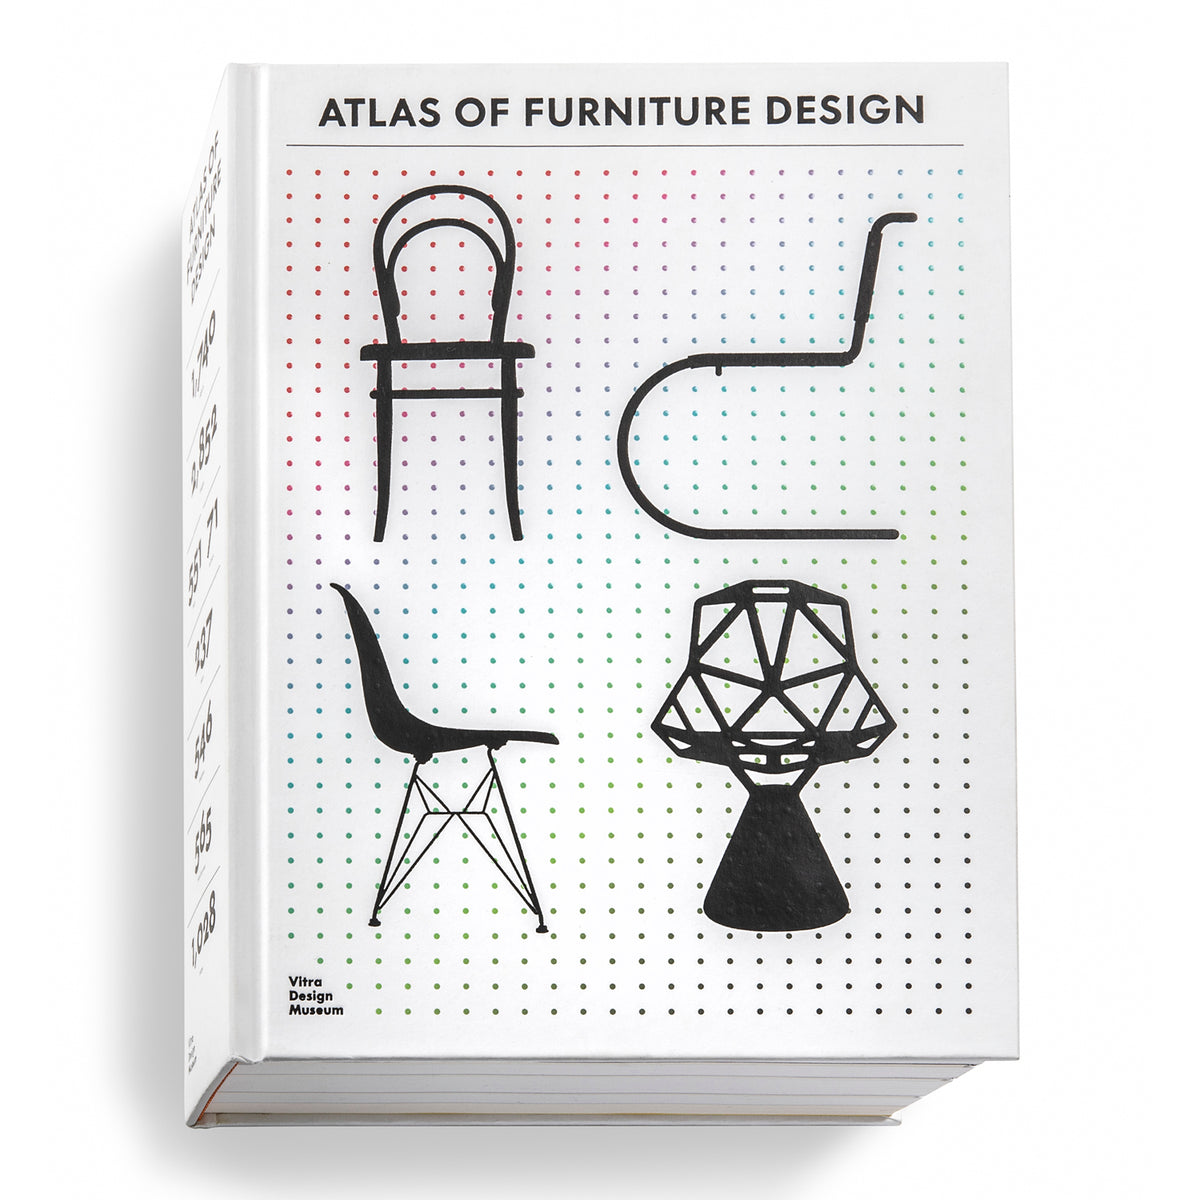 Atlas du design de meubles par Vitra